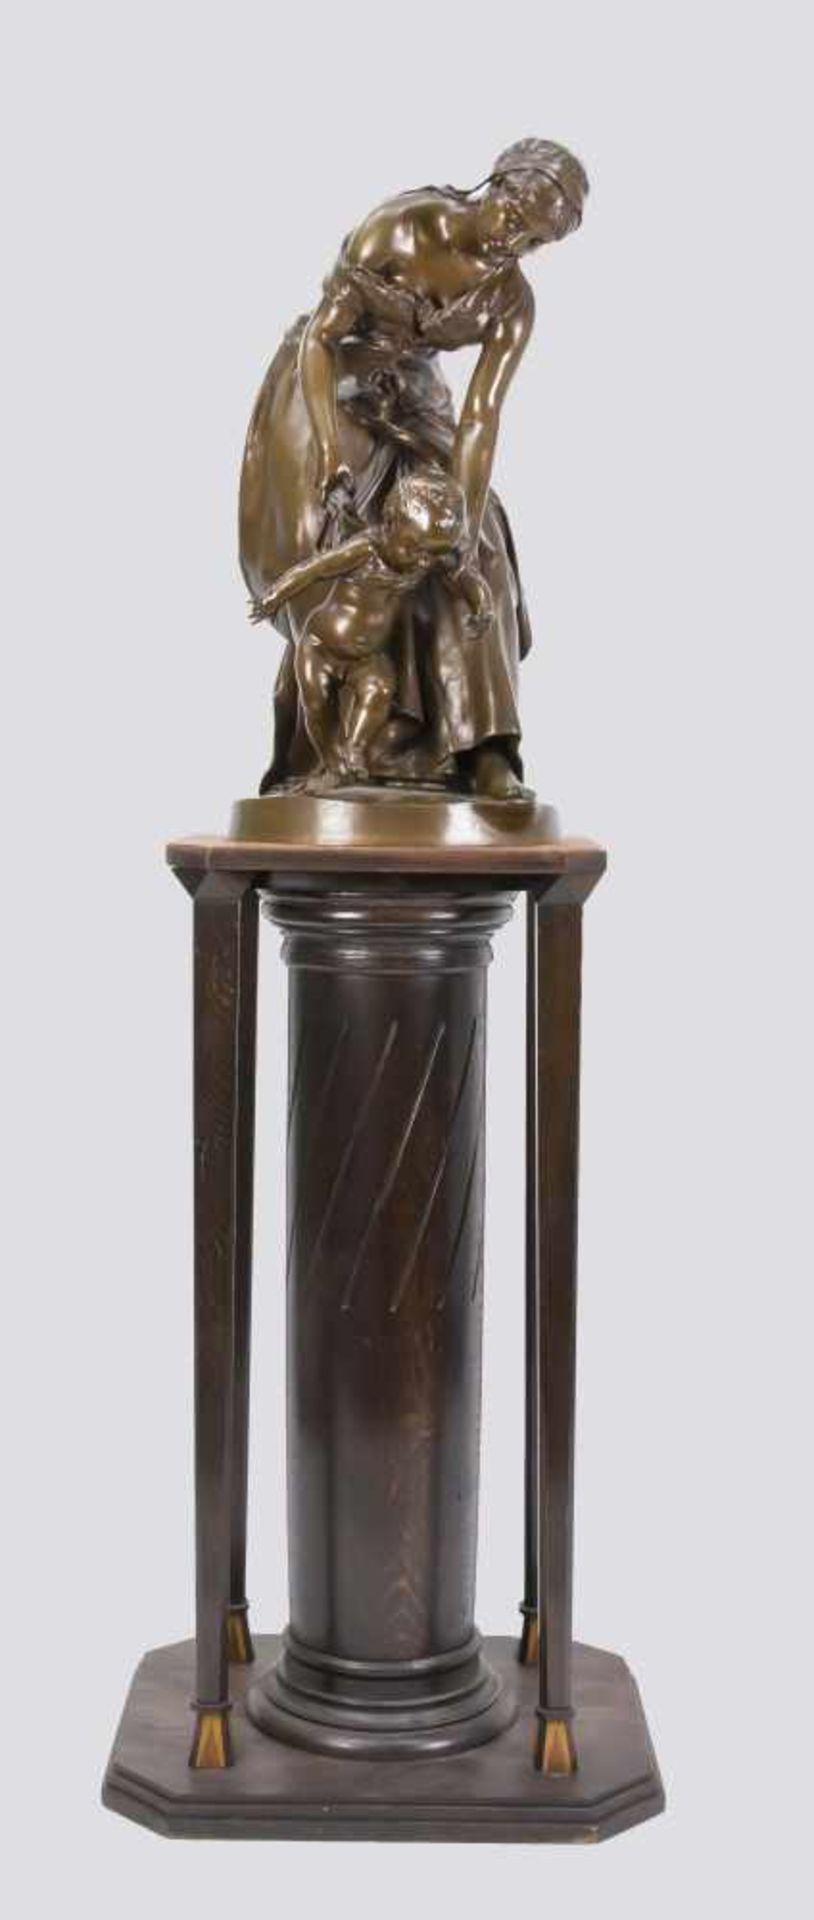 Plé, Henri Honoré. 1853 - Paris - 1922. "Les premiere Pas". Große Bronzeskulptur einer jungen Mutter